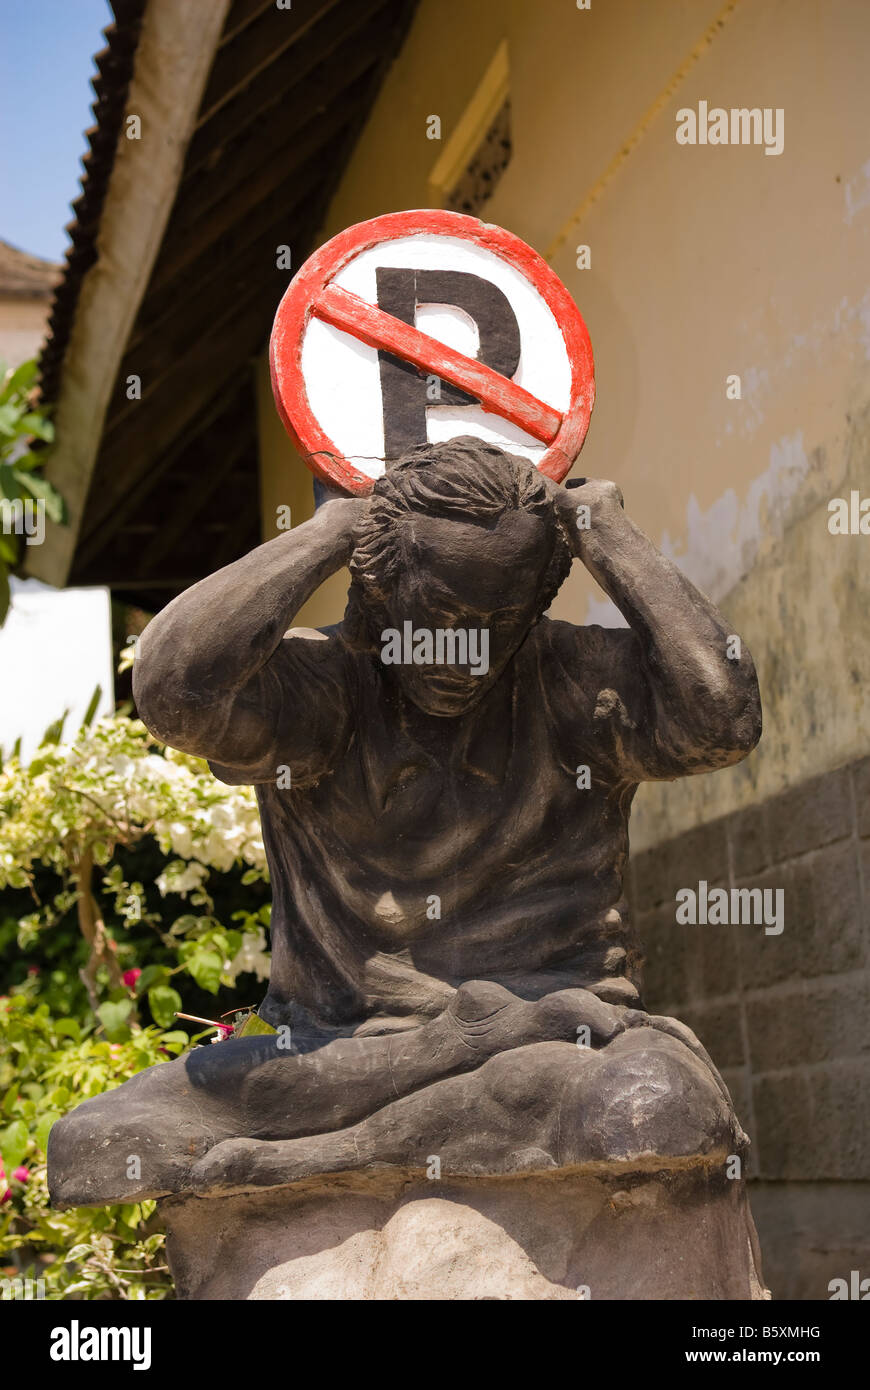 Nessun segno di parcheggio sulla sommità di una scultura o la statua di un uomo che appare per avere gli oneri del mondo su di lui Foto Stock